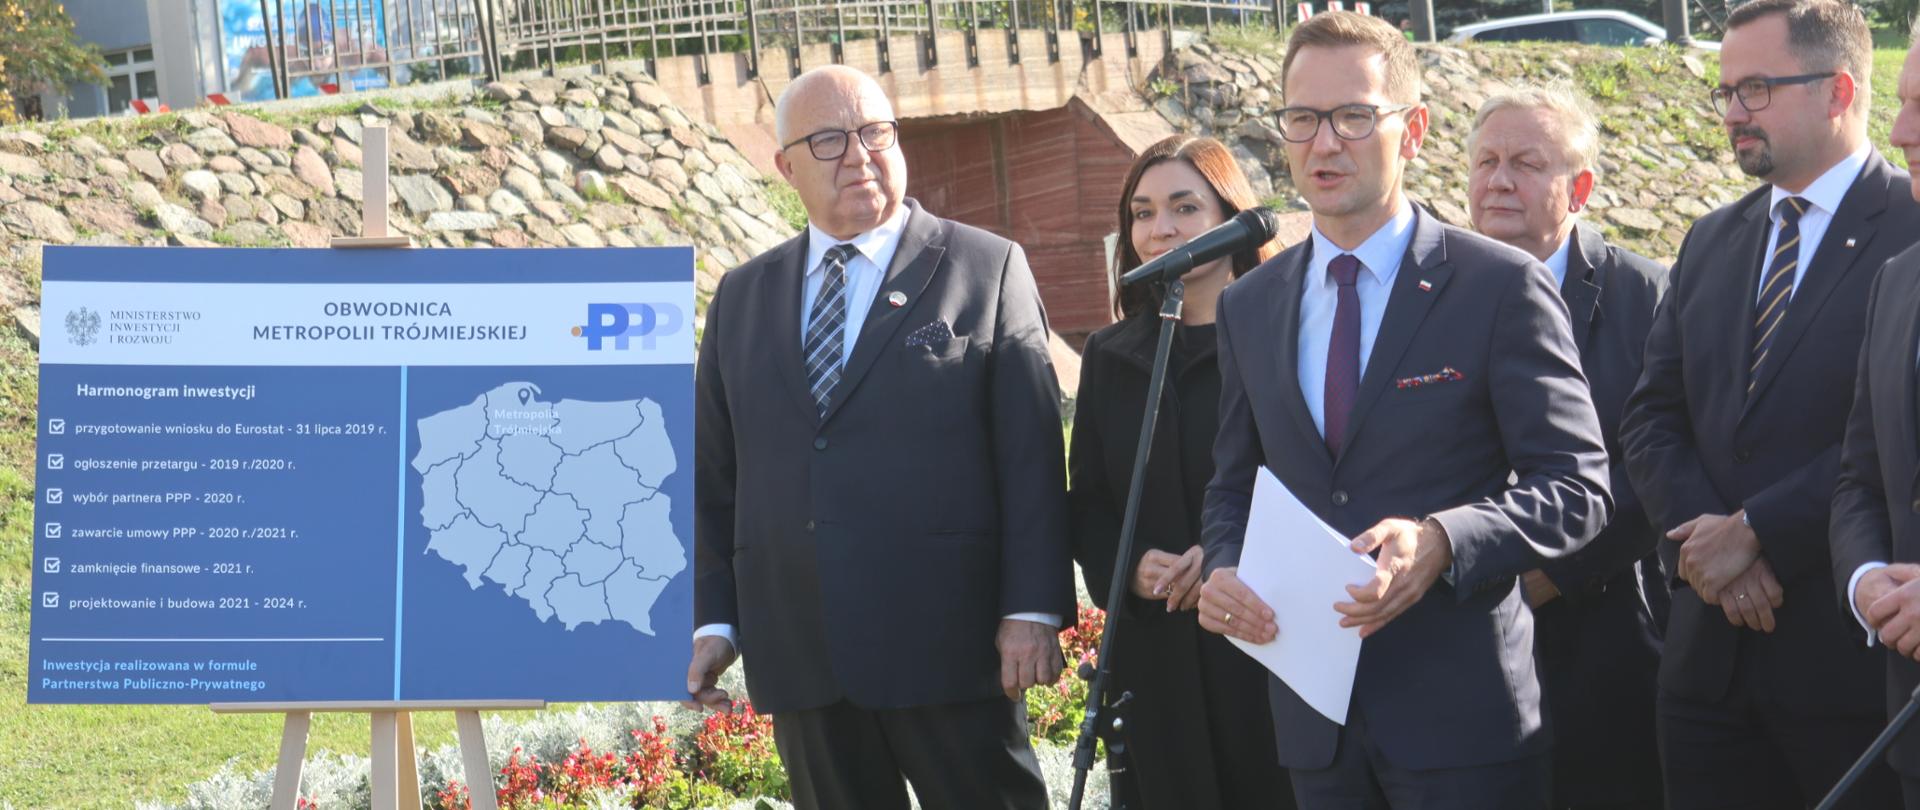 Na zdjęciu stoi pięć osób, wiceminister Waldemar Buda trzeci z lewej, skrajnie po lewej stronie widać tablicę z harmonogramem budowy.